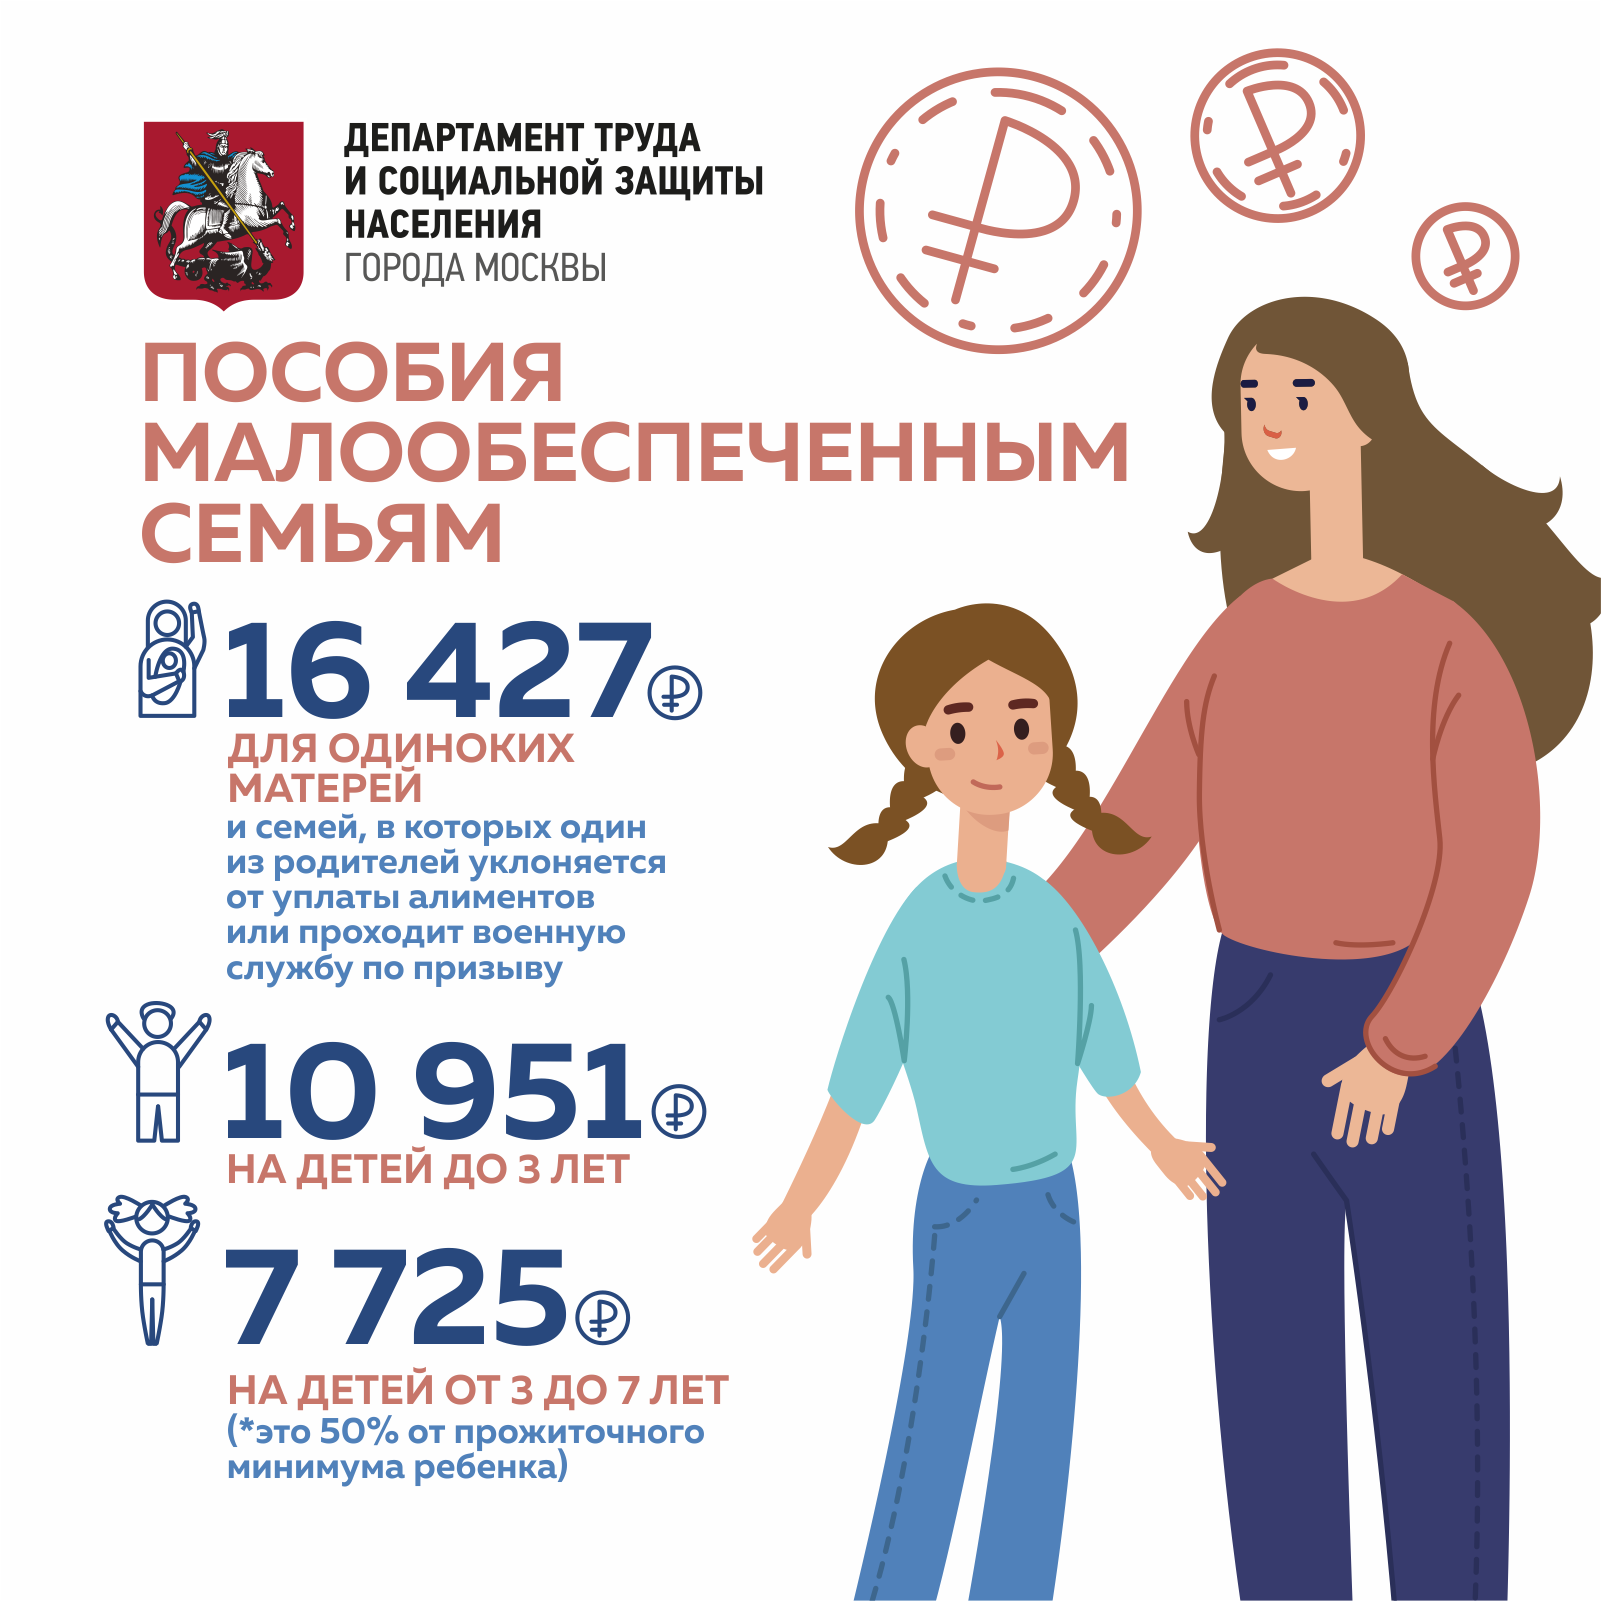 Размер каждой индивидуальной социальной выплаты на 2021 год определяется в Москве и других городах России